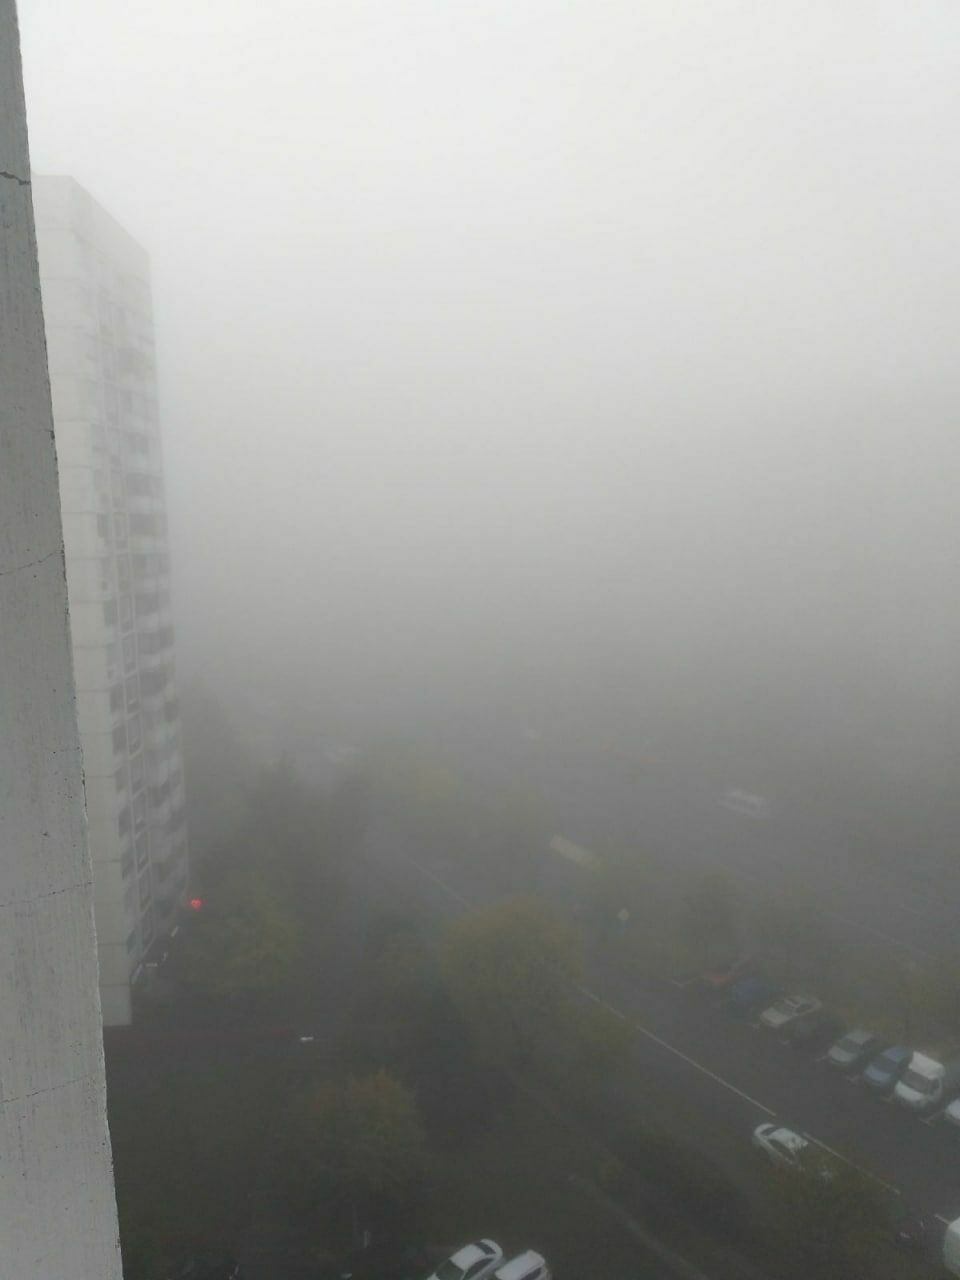 Moscow shrouded in dense fog